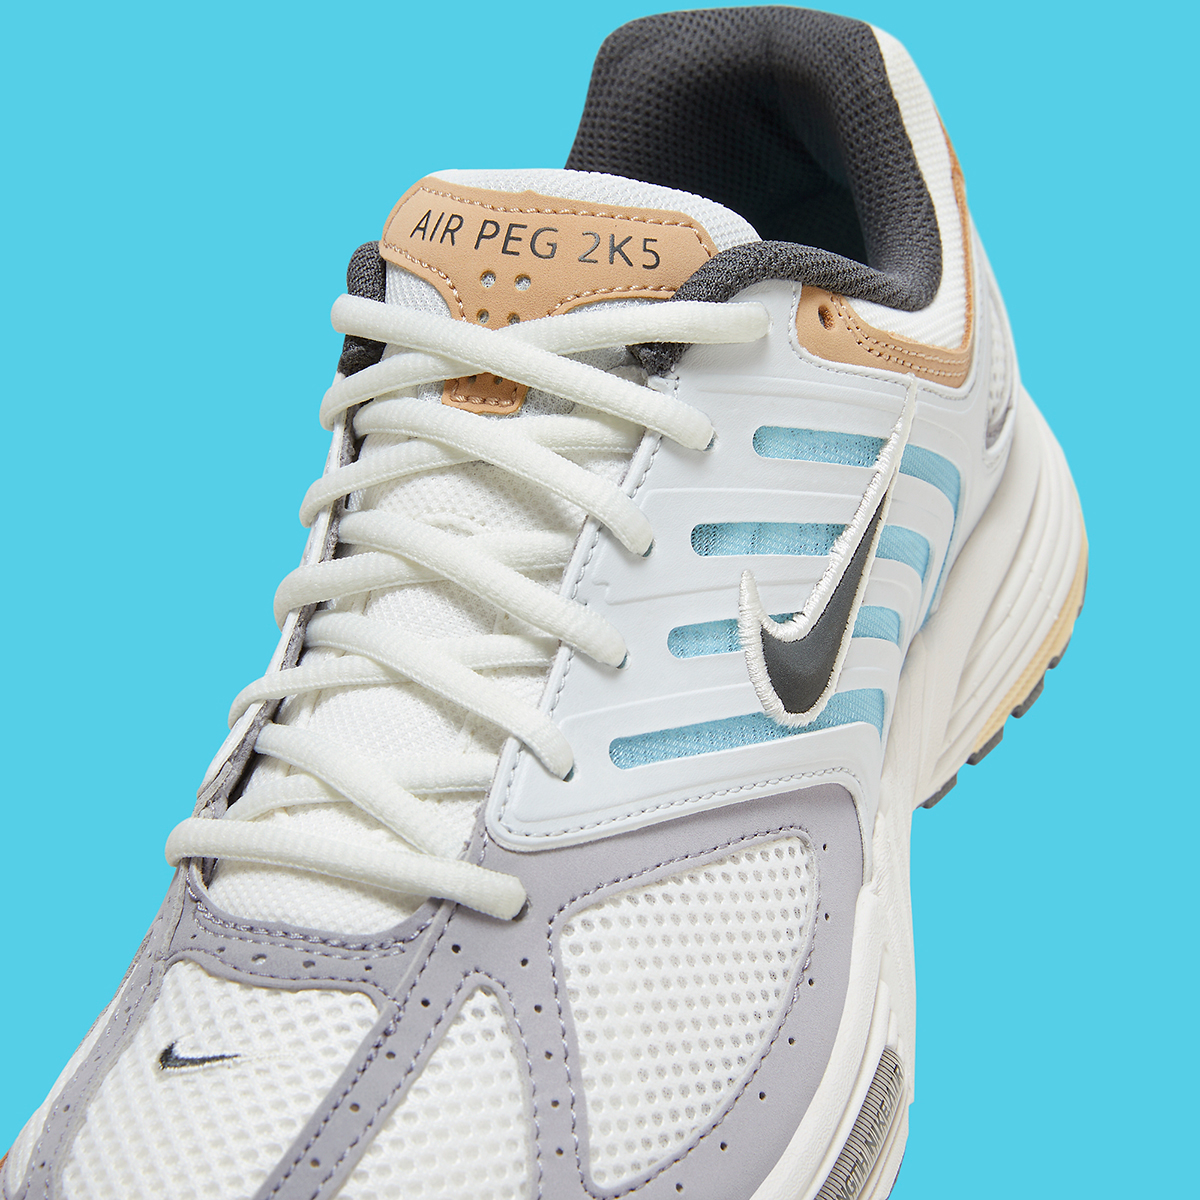 Nike Pegasus 2k5 White Glacier Blue Tan Hm4348 100 4